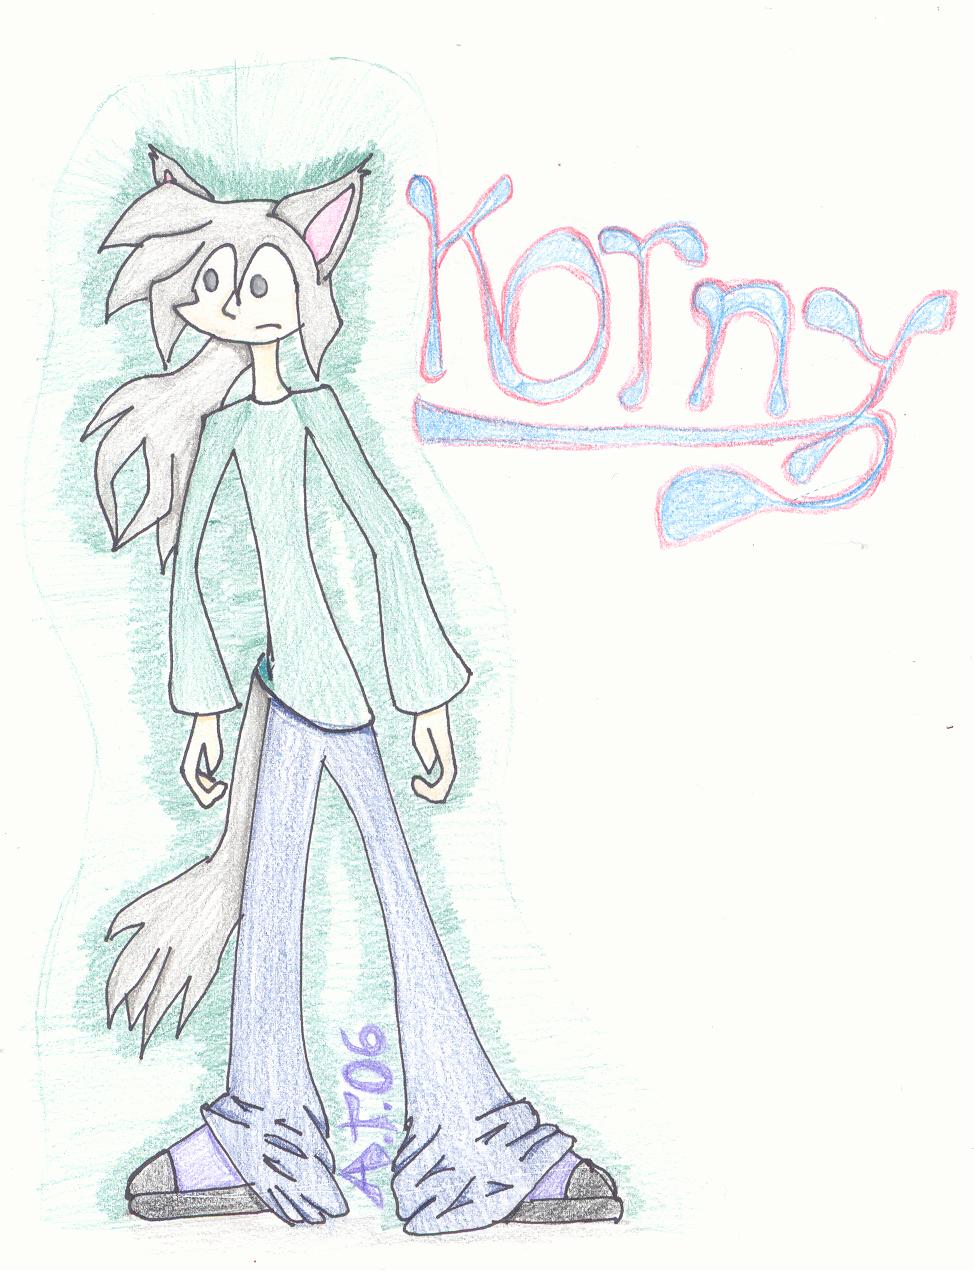 Lo0k! Its Korny! by Dragoninuyokai